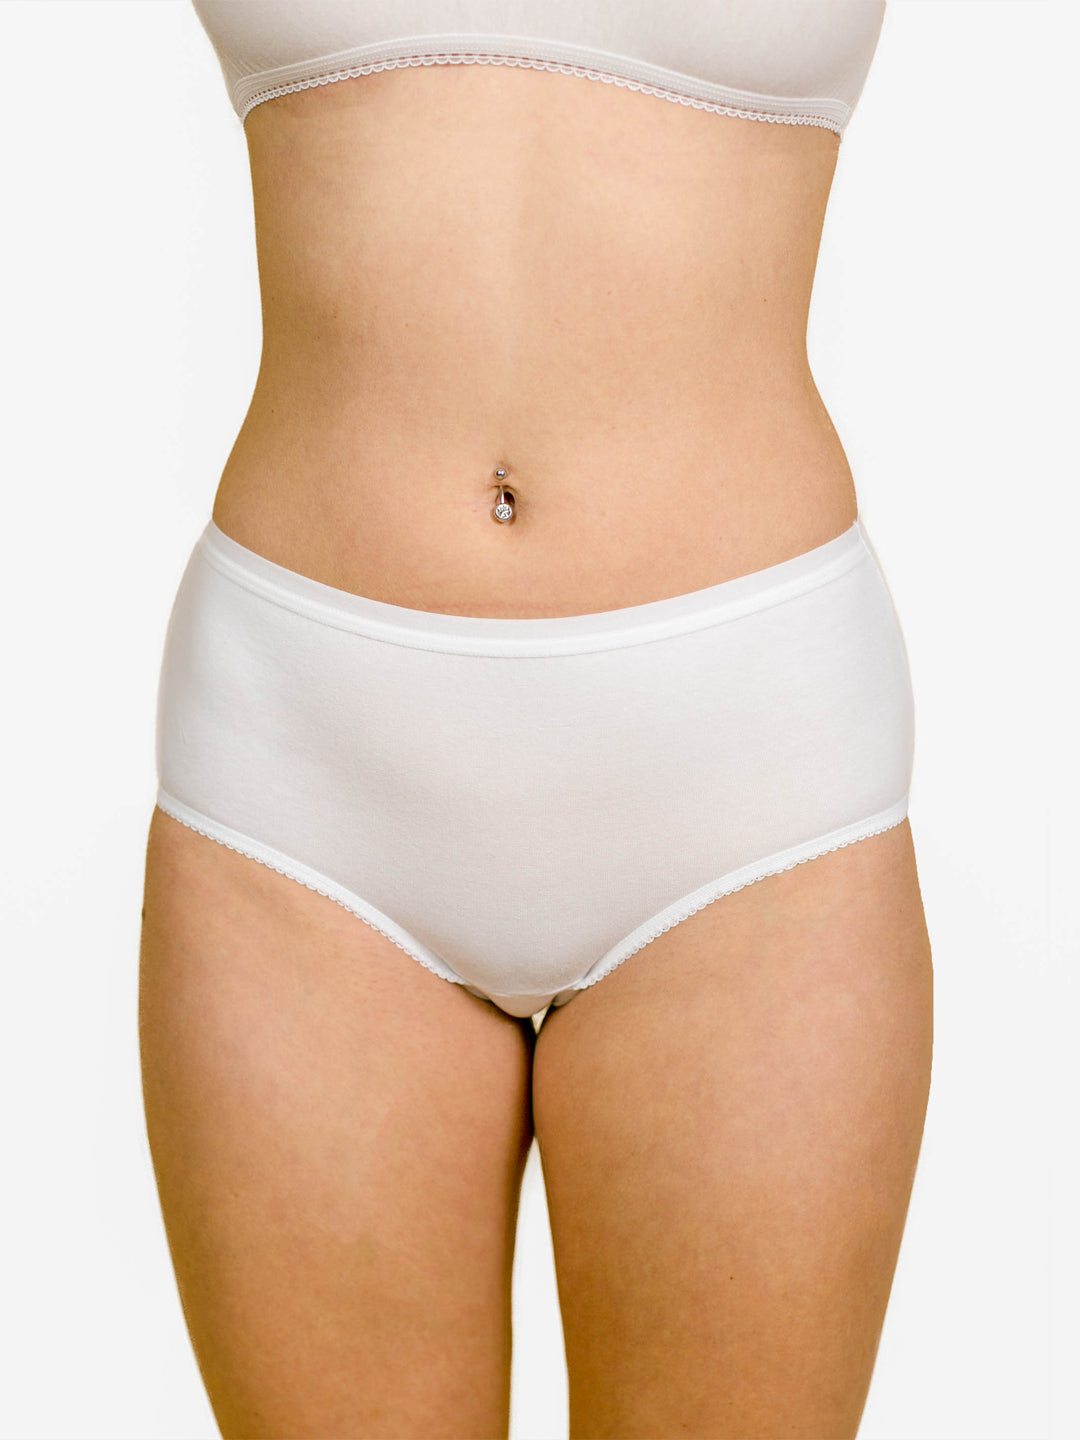 Plain Ladies White Cotton Underwear, Size: M at Rs 31/piece in